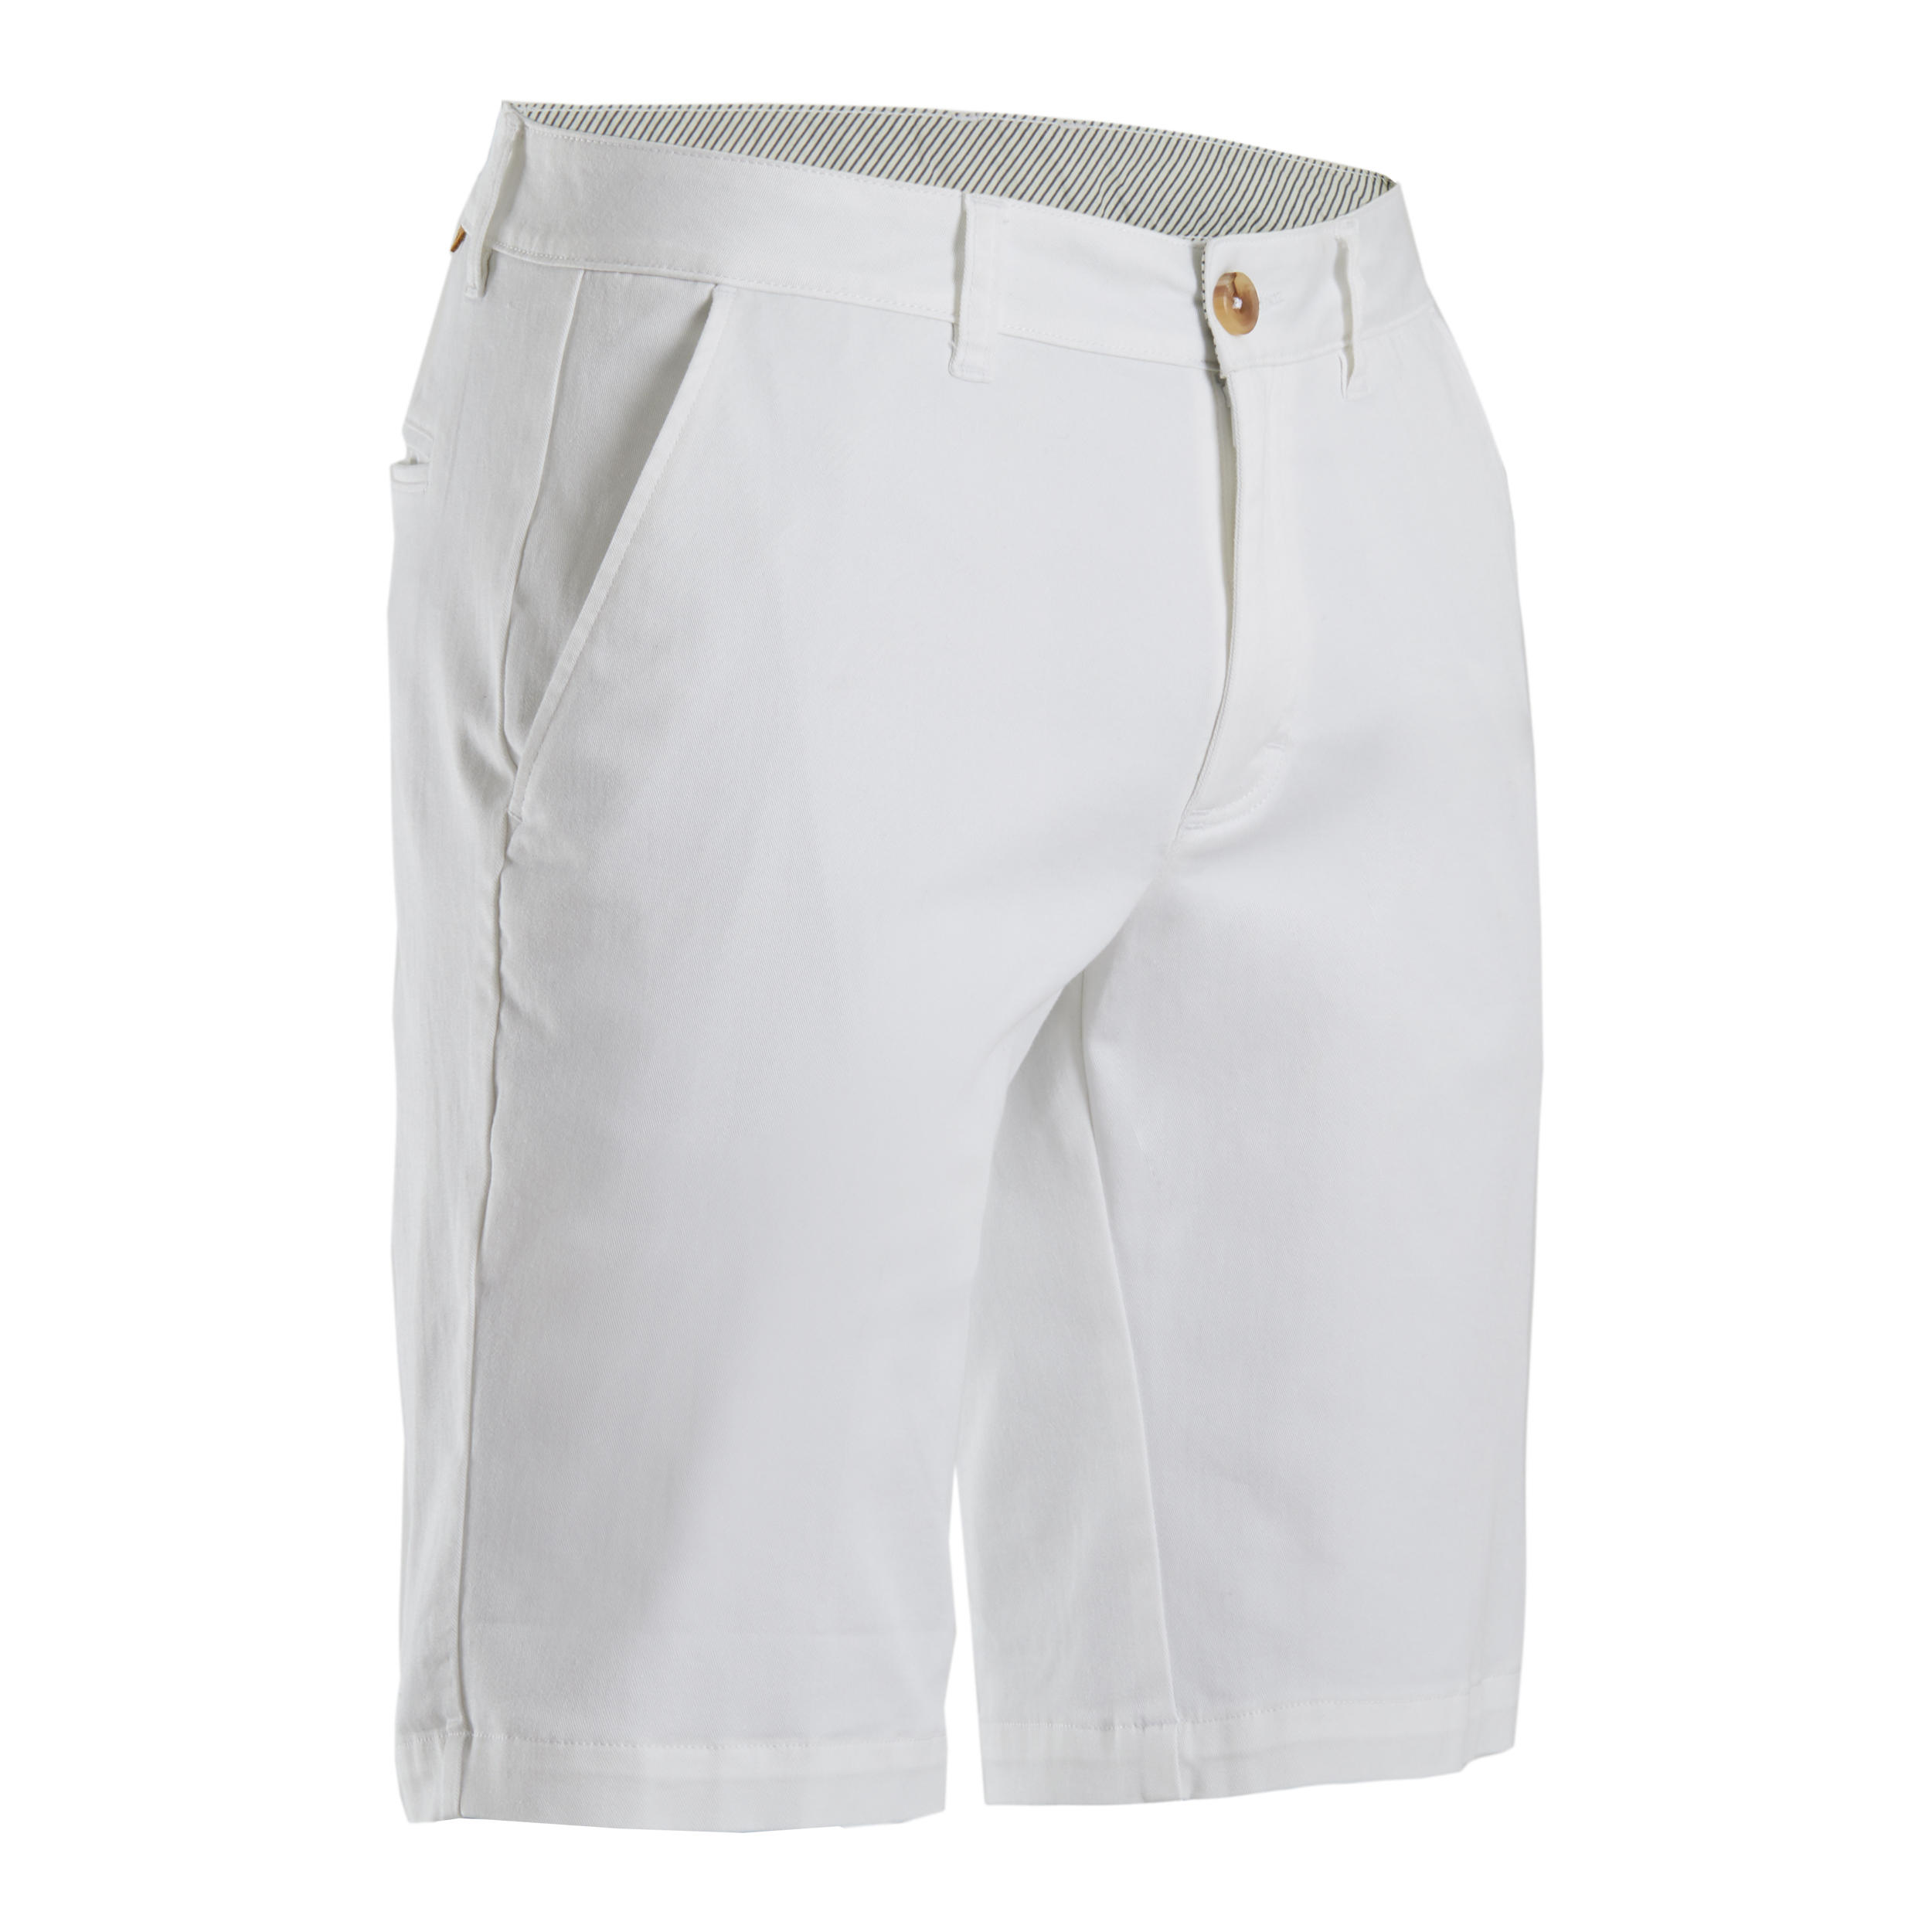 decathlon mens golf shorts